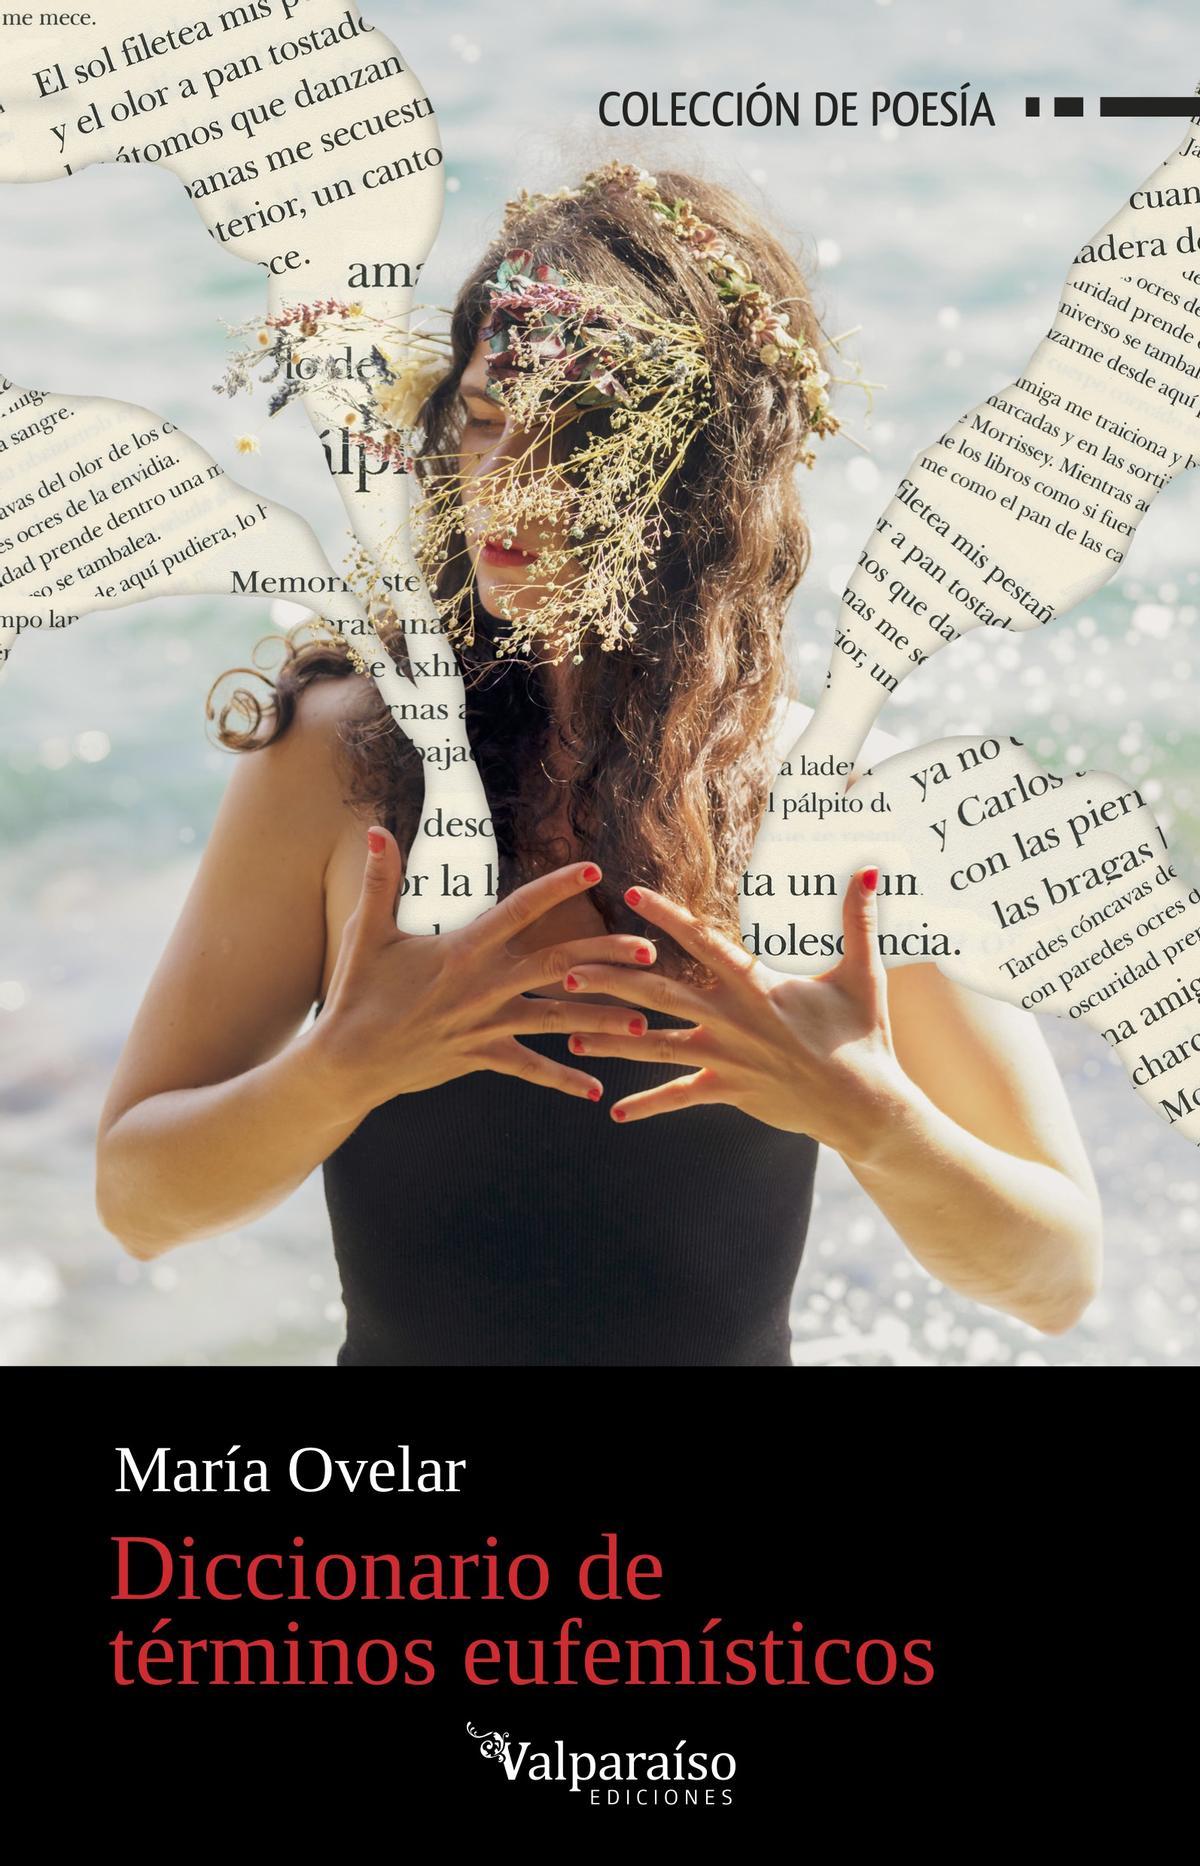 Portada del poemario de María Ovelar